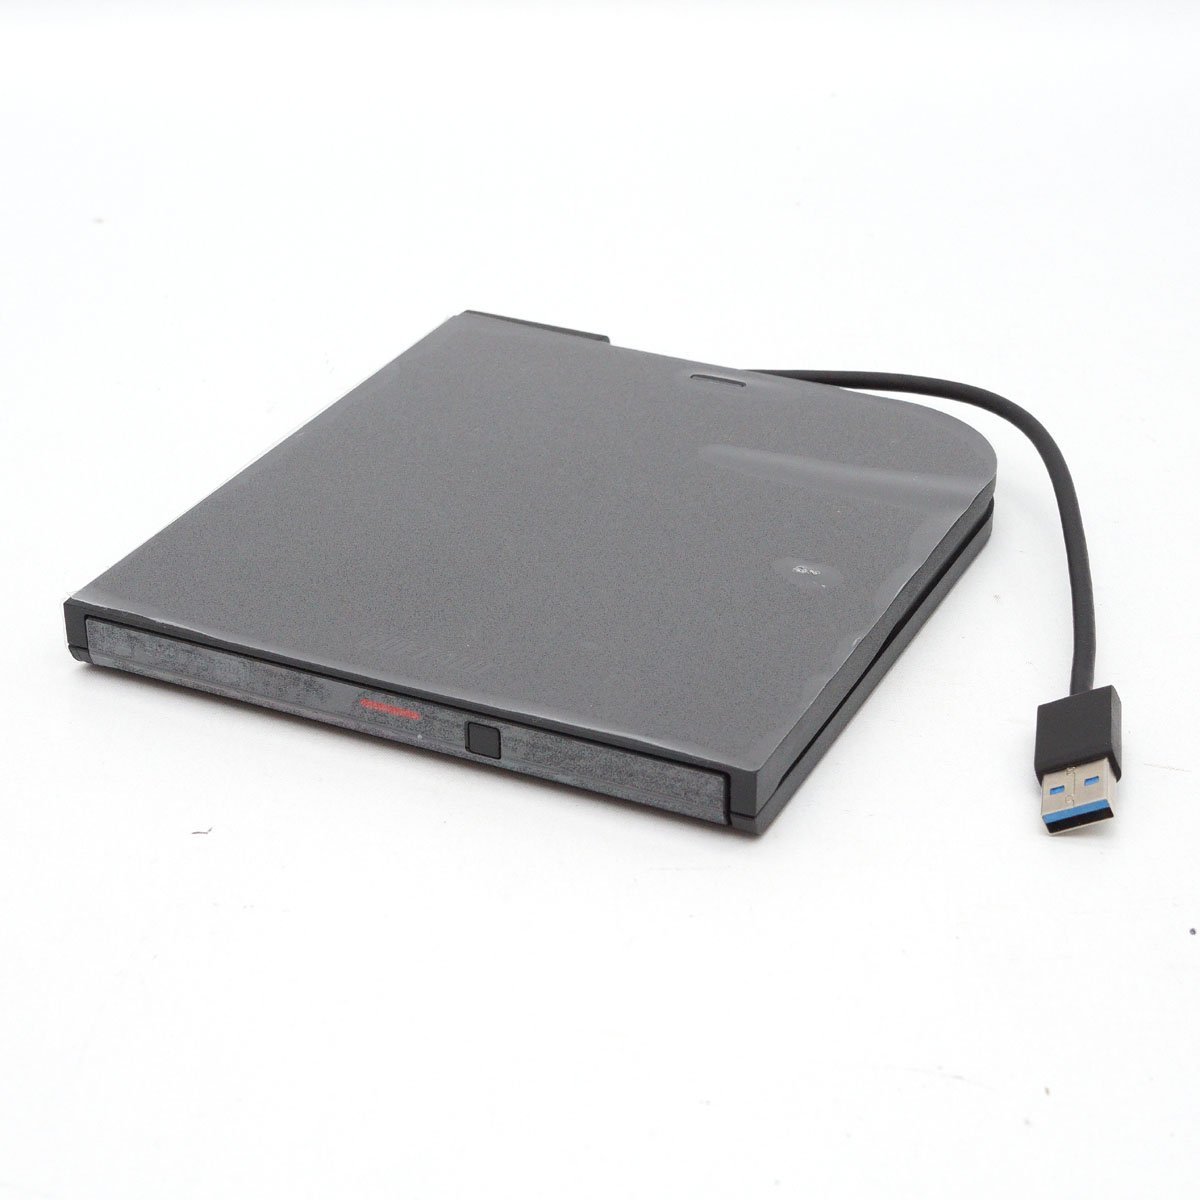 【美品】BUFFALO ポータブルDVDドライブ DVSM-PTV8U3 ブラック USB3.2(Gen1)/USB2.0 CD/DVD 12cm/8cmメディア対応 本体のみ [H800283]_画像1